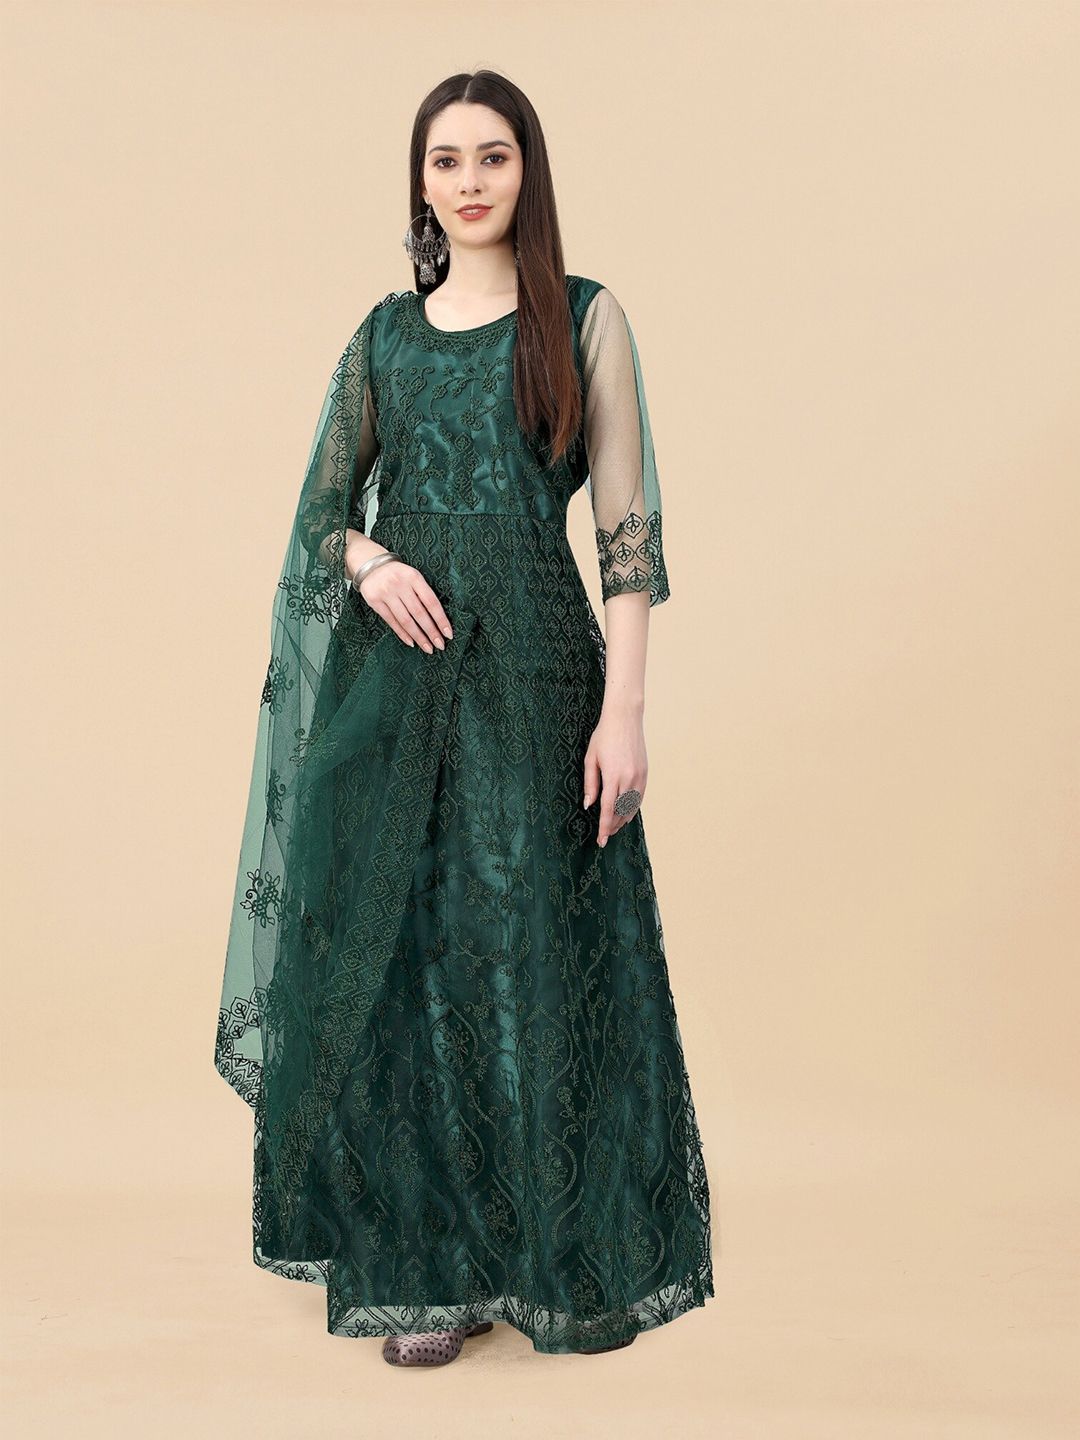 APNISHA Ethnic Motifs Net Ethnic Maxi Dress Price in India